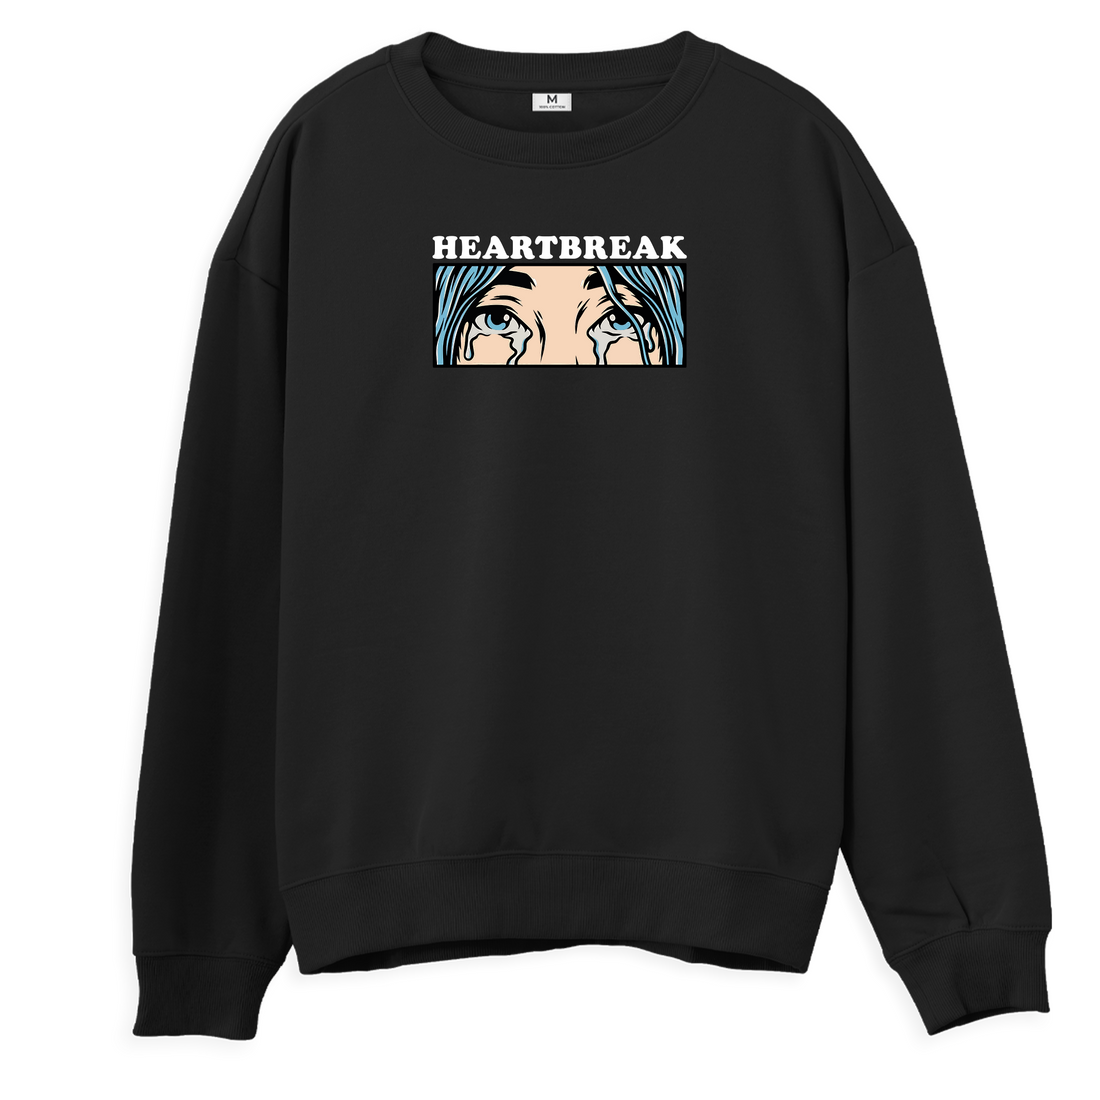 Heartbreak - Sweatshirt